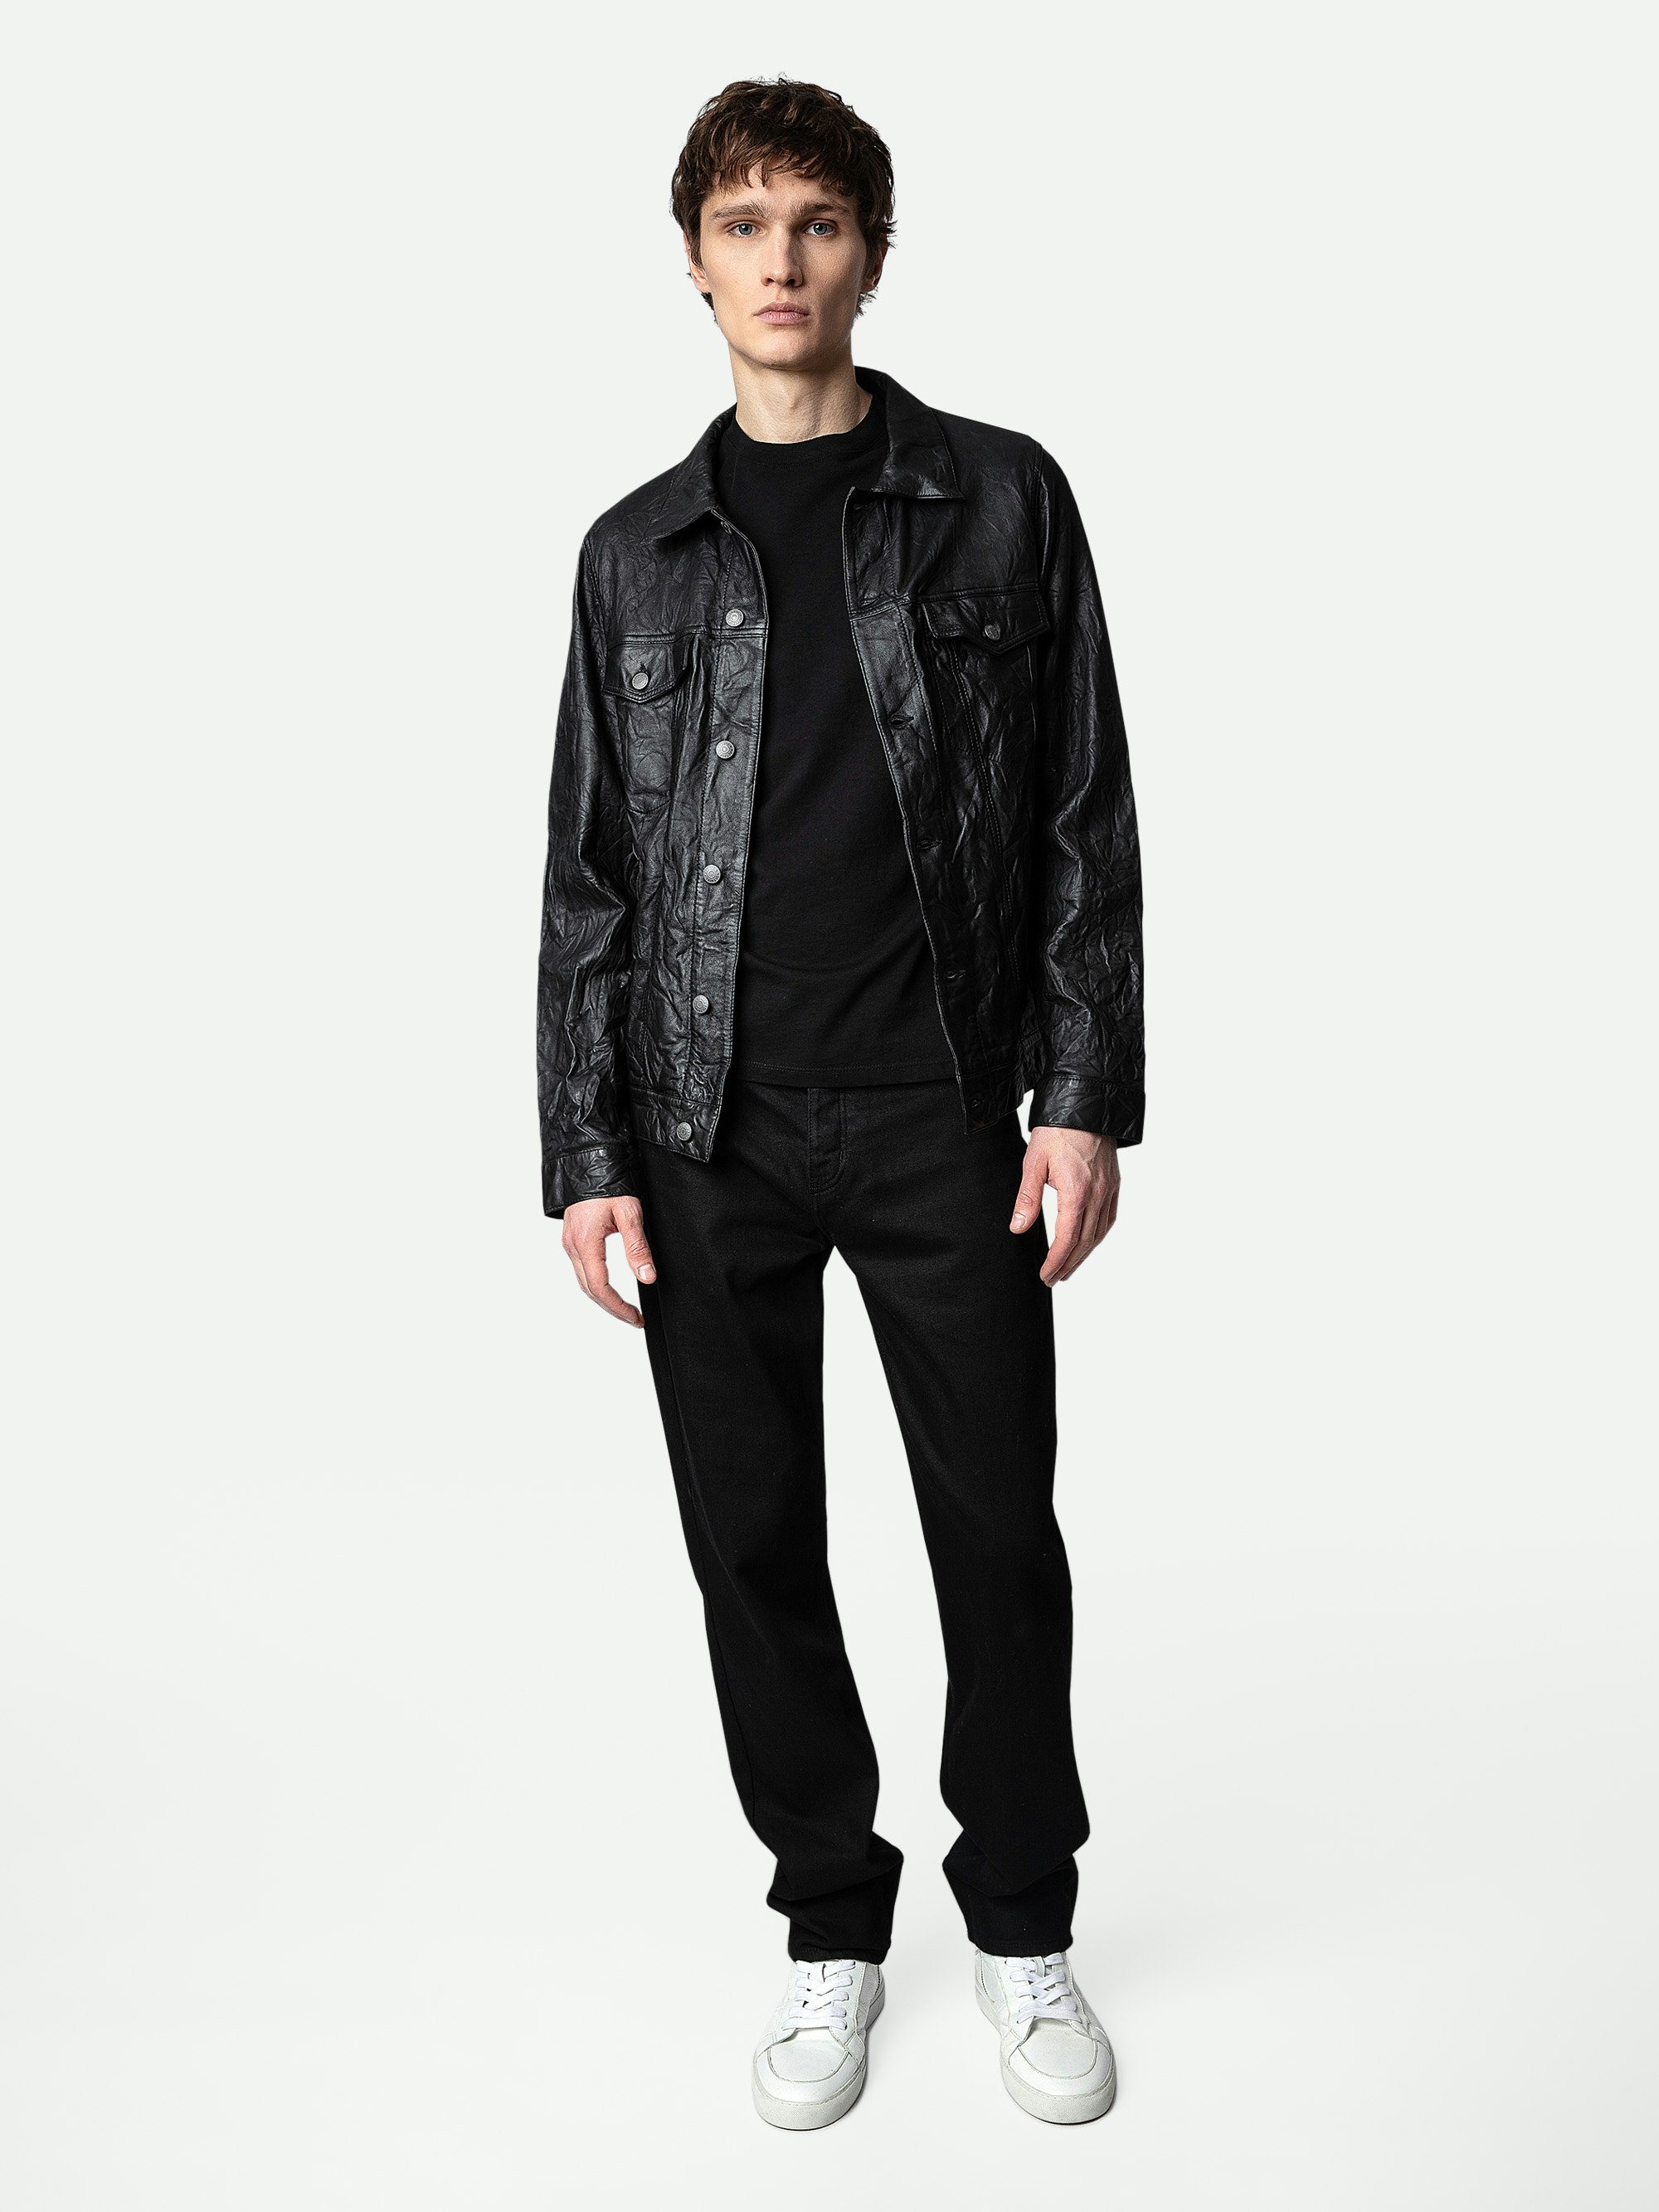 Base Crinkled Leather Jacket - Men's black crinkled leather jacket.